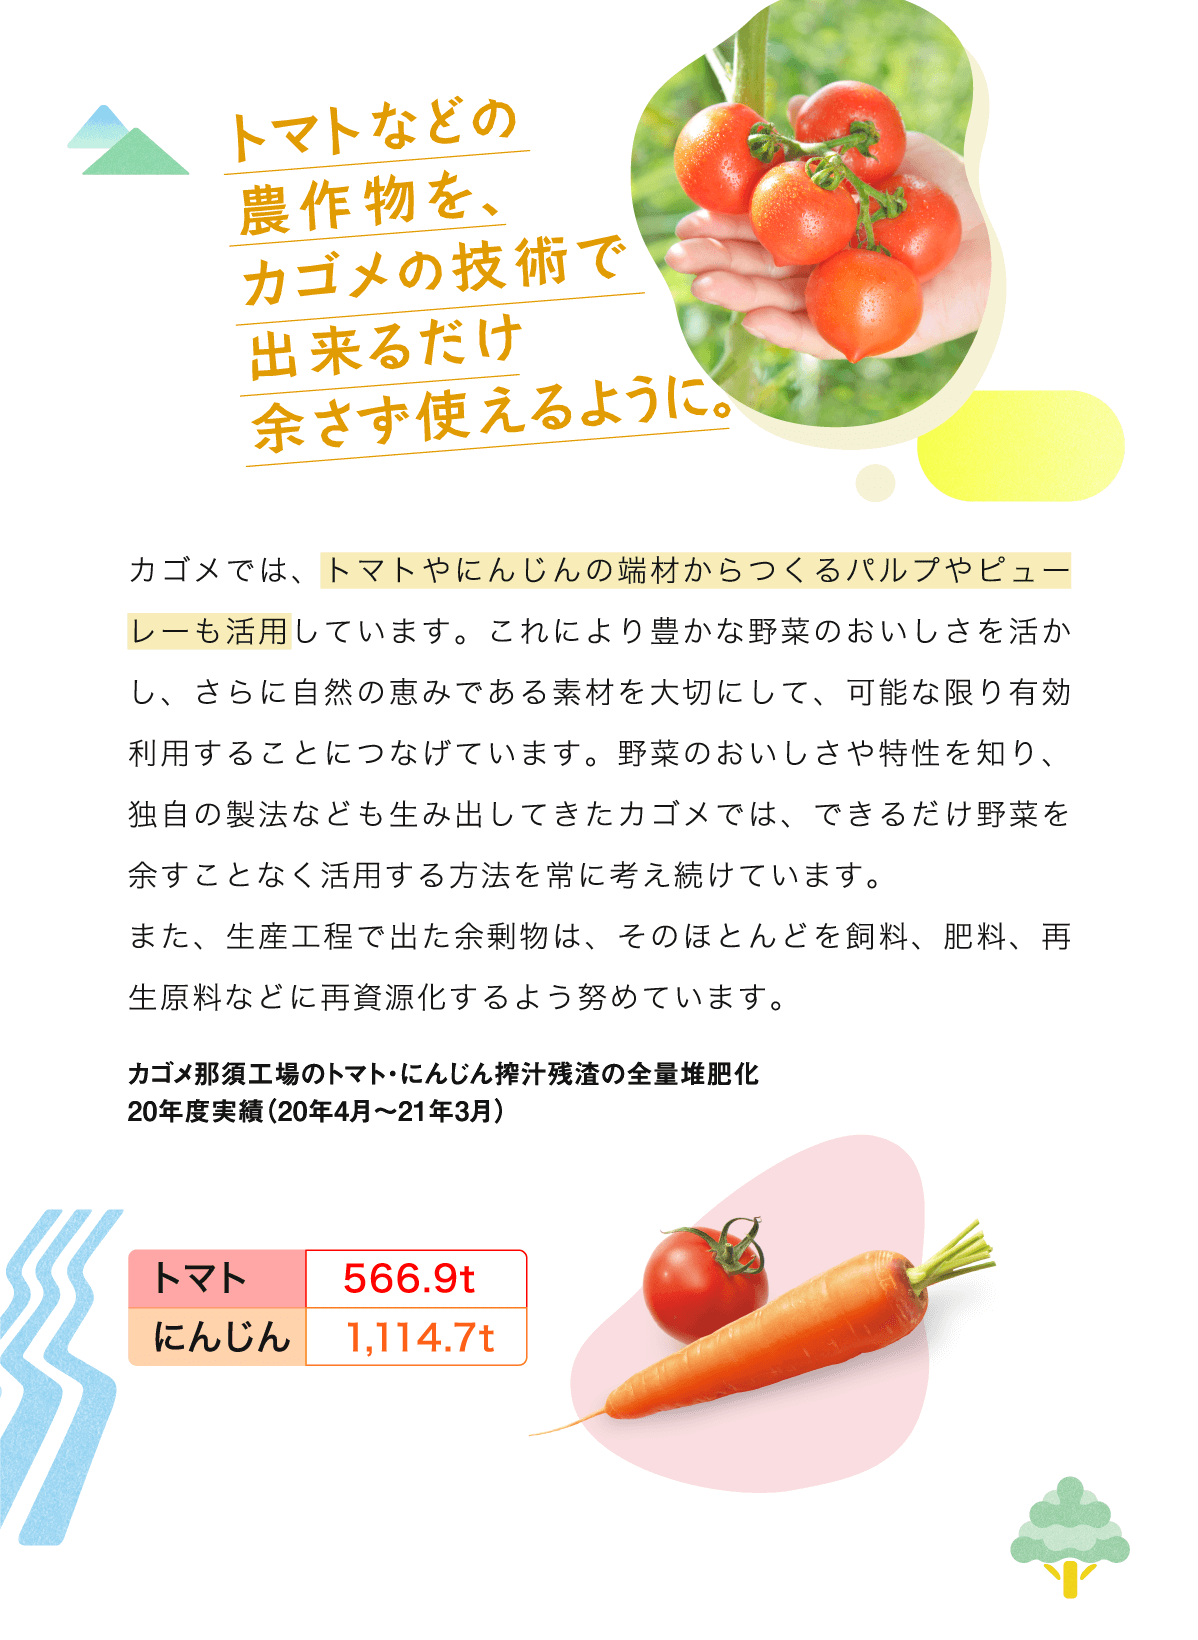 トマトなどの農作物を、カゴメの技術で出来るだけ余さず使えるように。